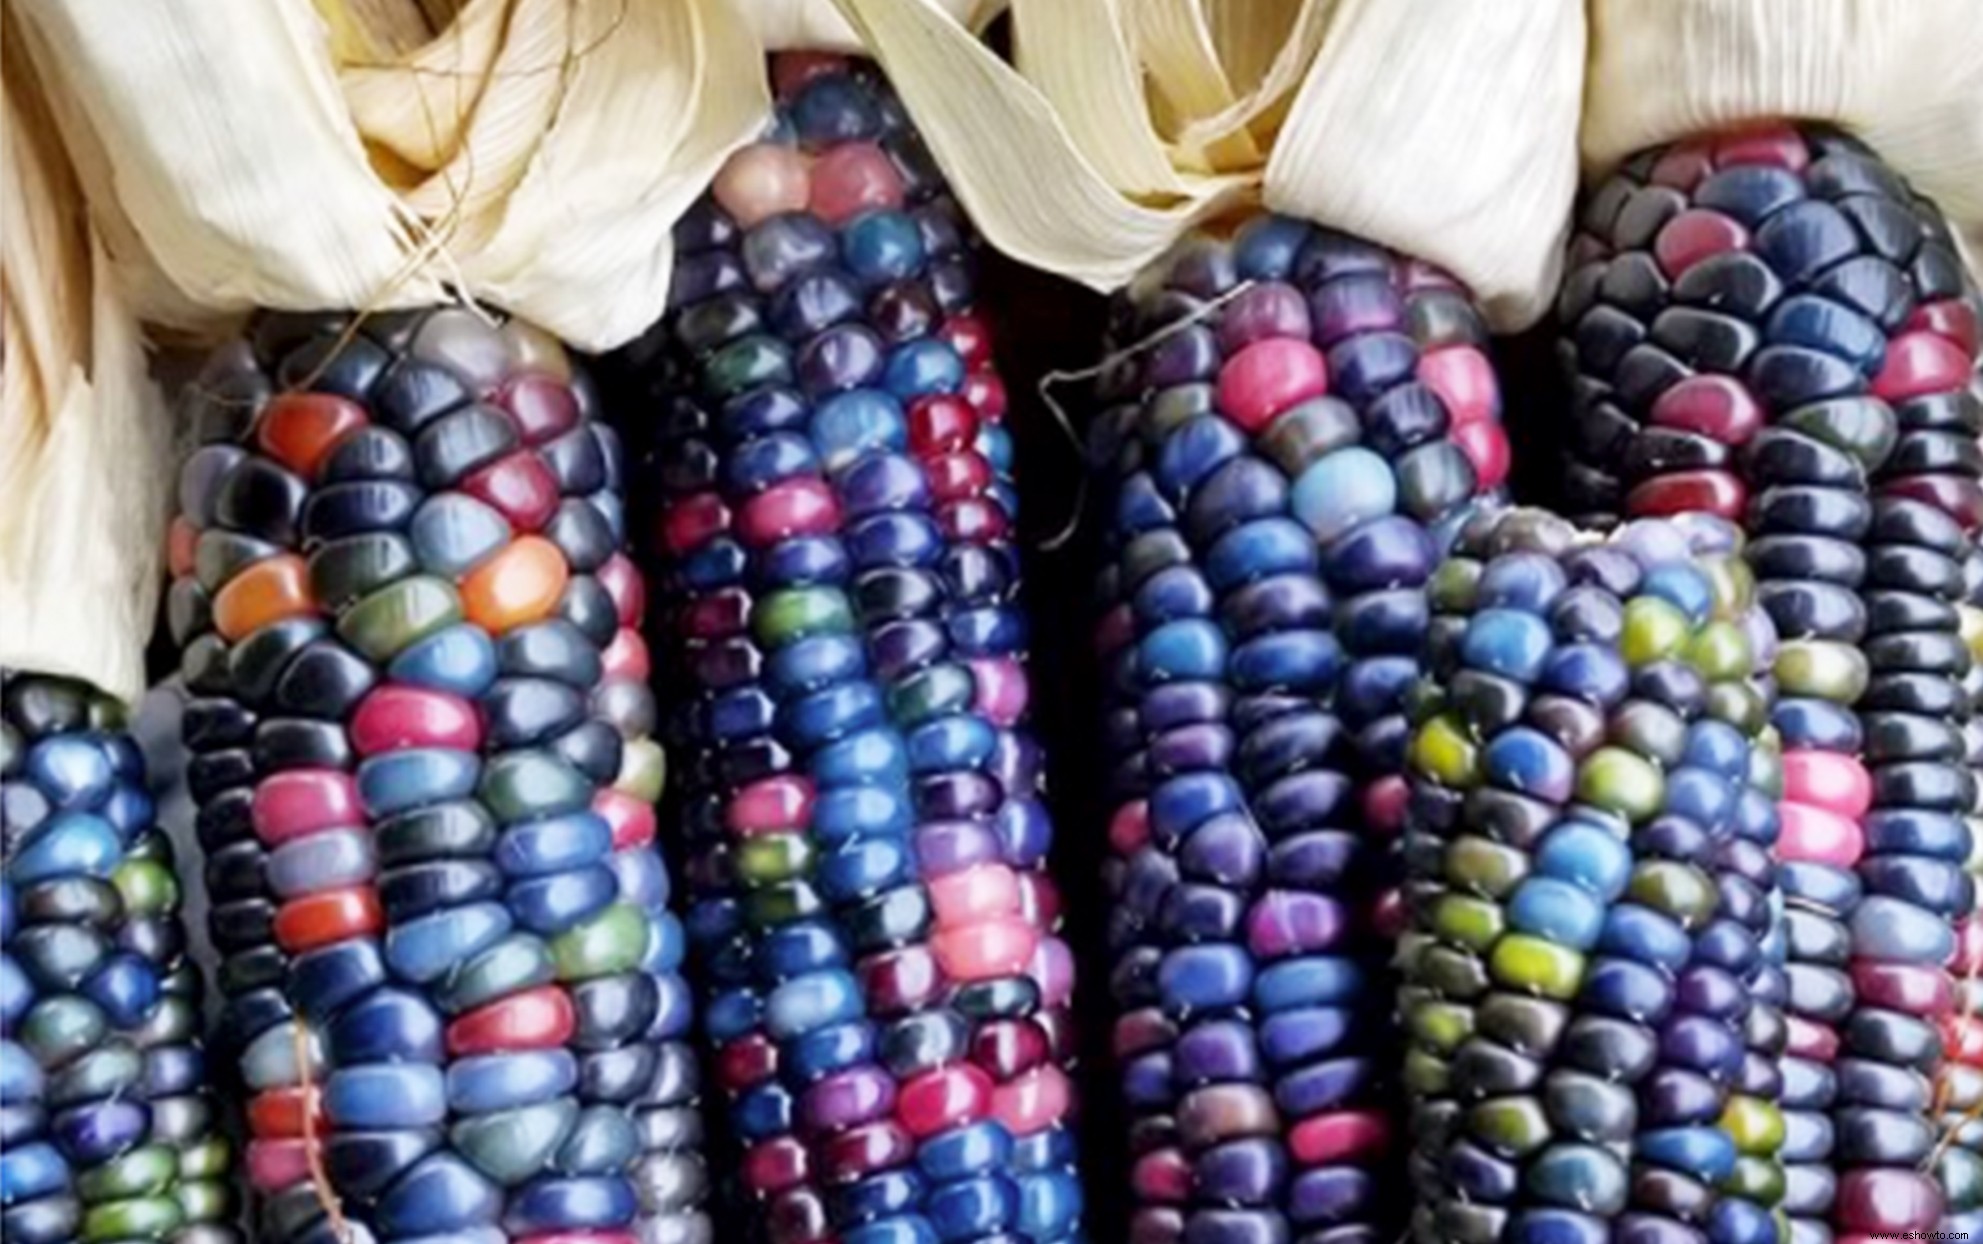 El maíz arcoíris arrasó en Internet y ahora puedes plantarlo en tu propio jardín 